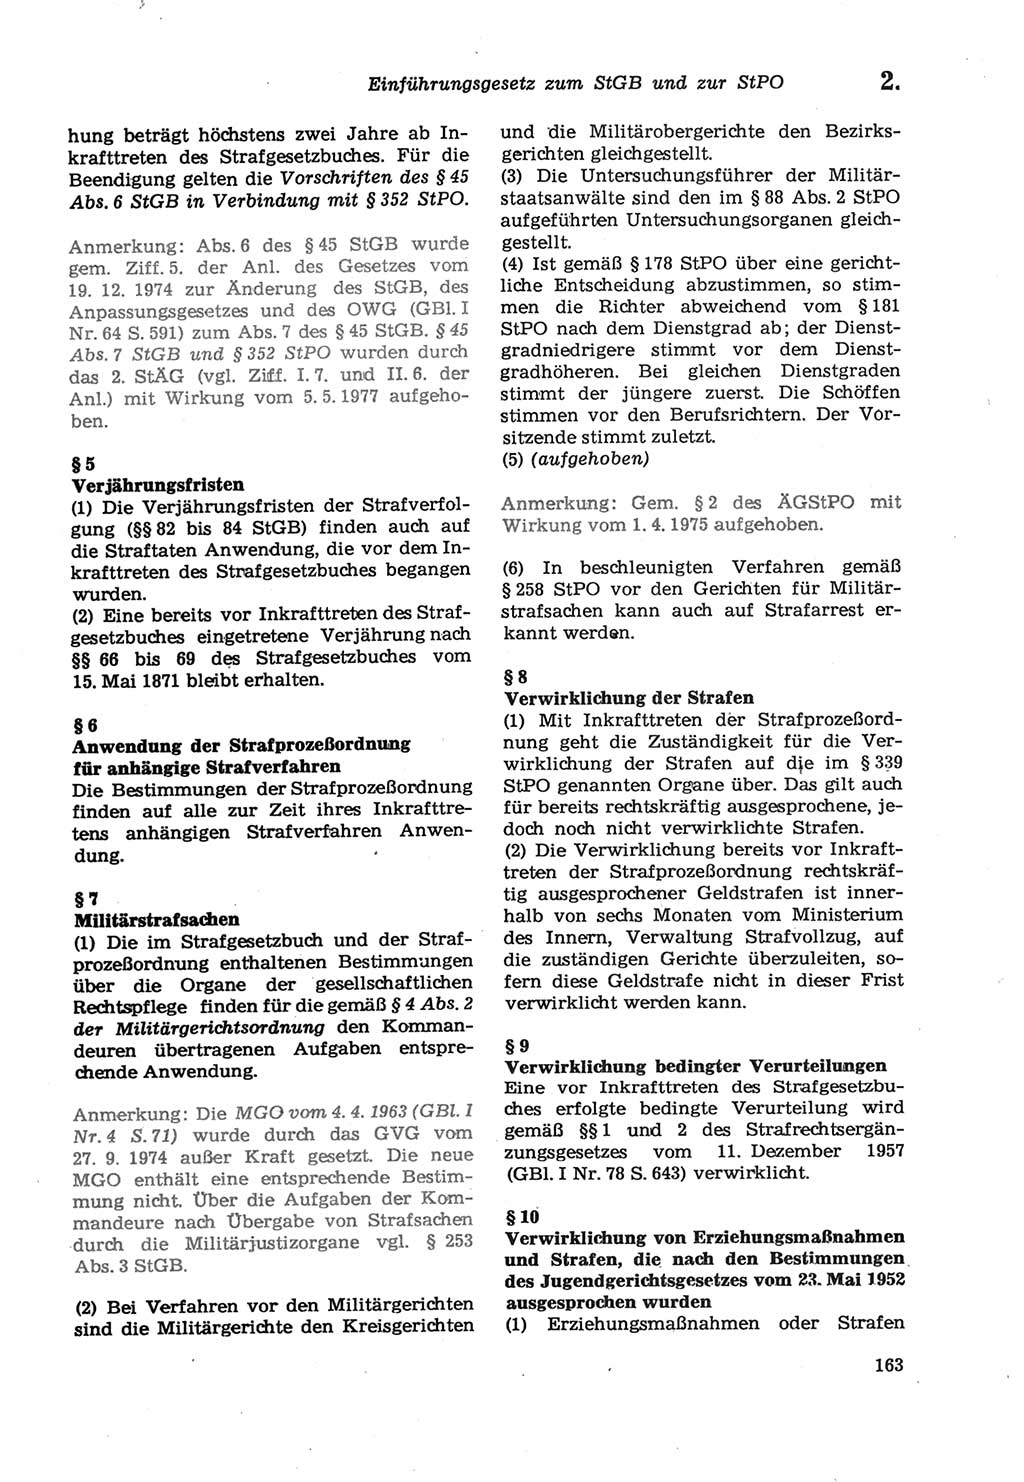 Strafprozeßordnung (StPO) der Deutschen Demokratischen Republik (DDR) sowie angrenzende Gesetze und Bestimmungen 1979, Seite 163 (StPO DDR Ges. Best. 1979, S. 163)